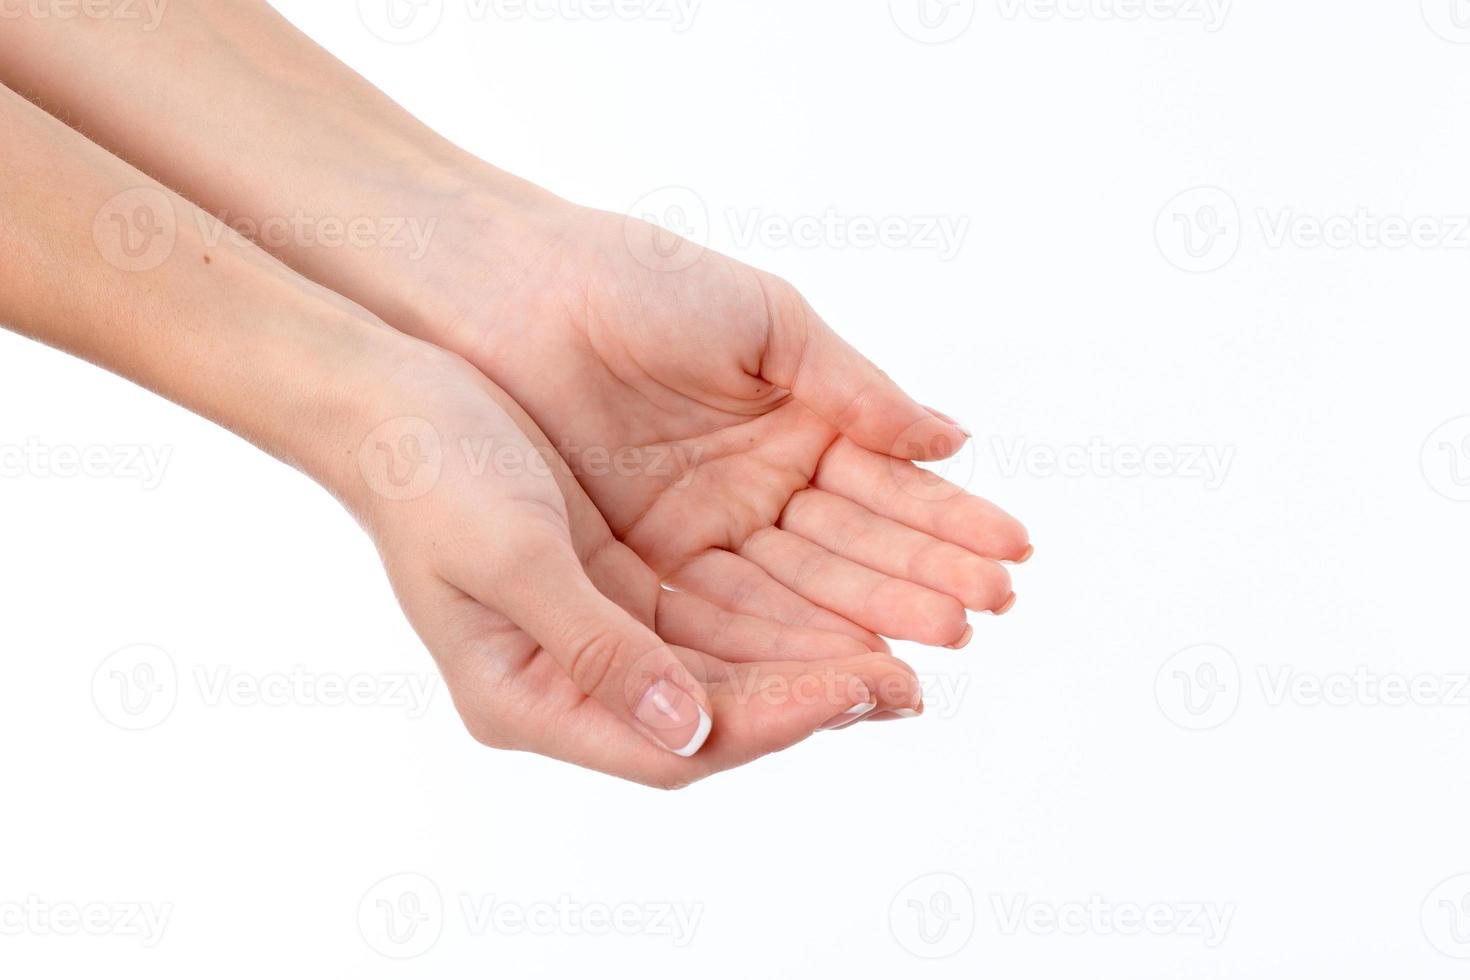 dos manos femeninas palmas extendidas desplegadas aisladas sobre fondo blanco foto